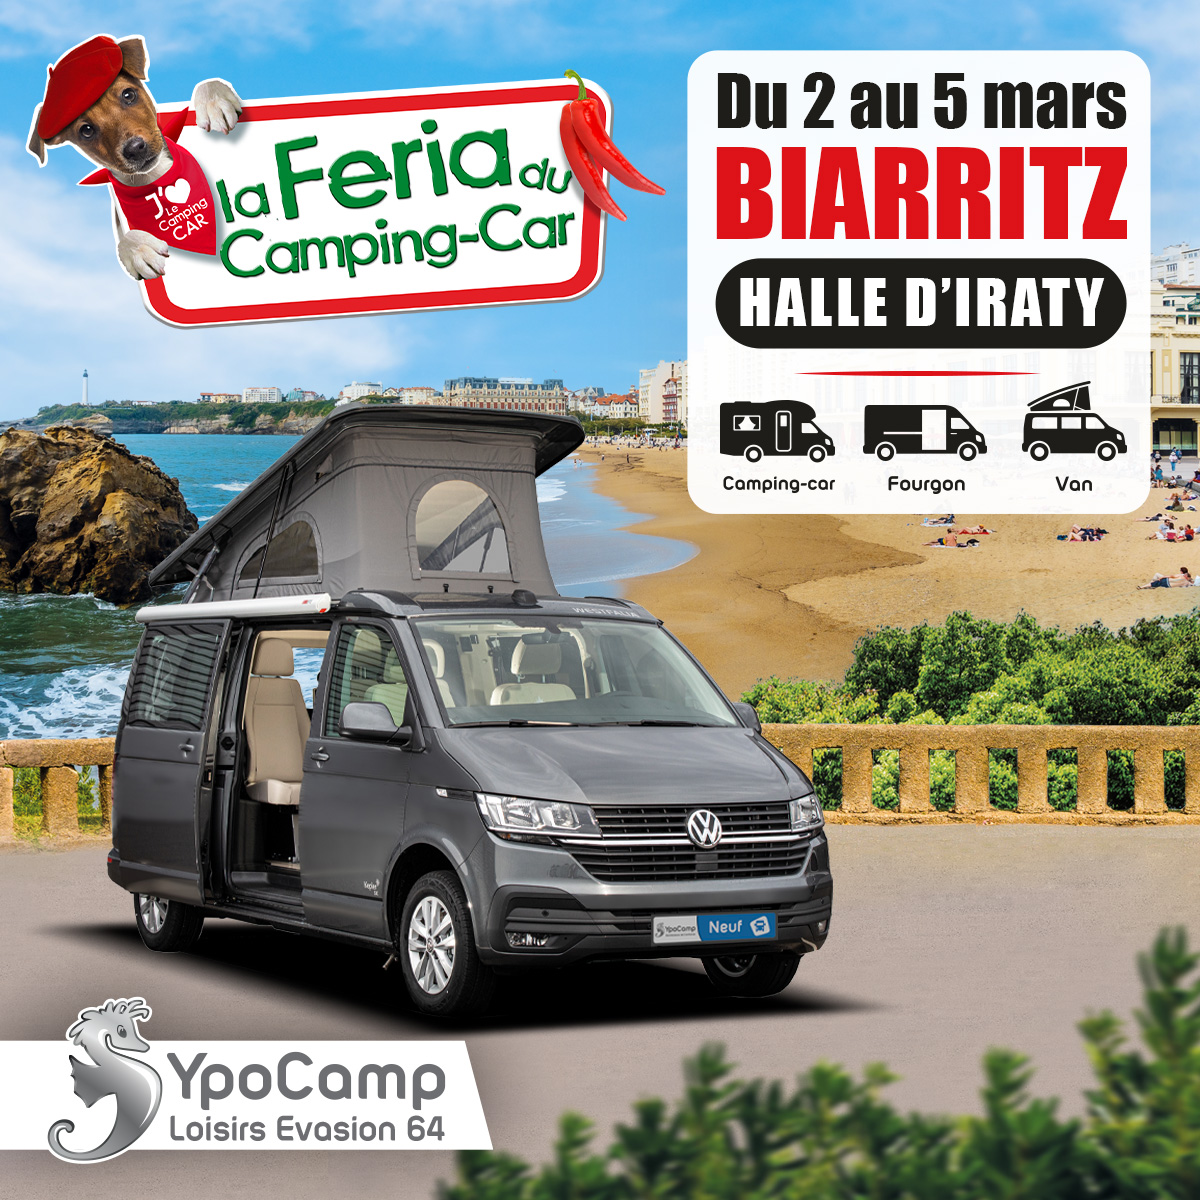 Feria du Camping-Car